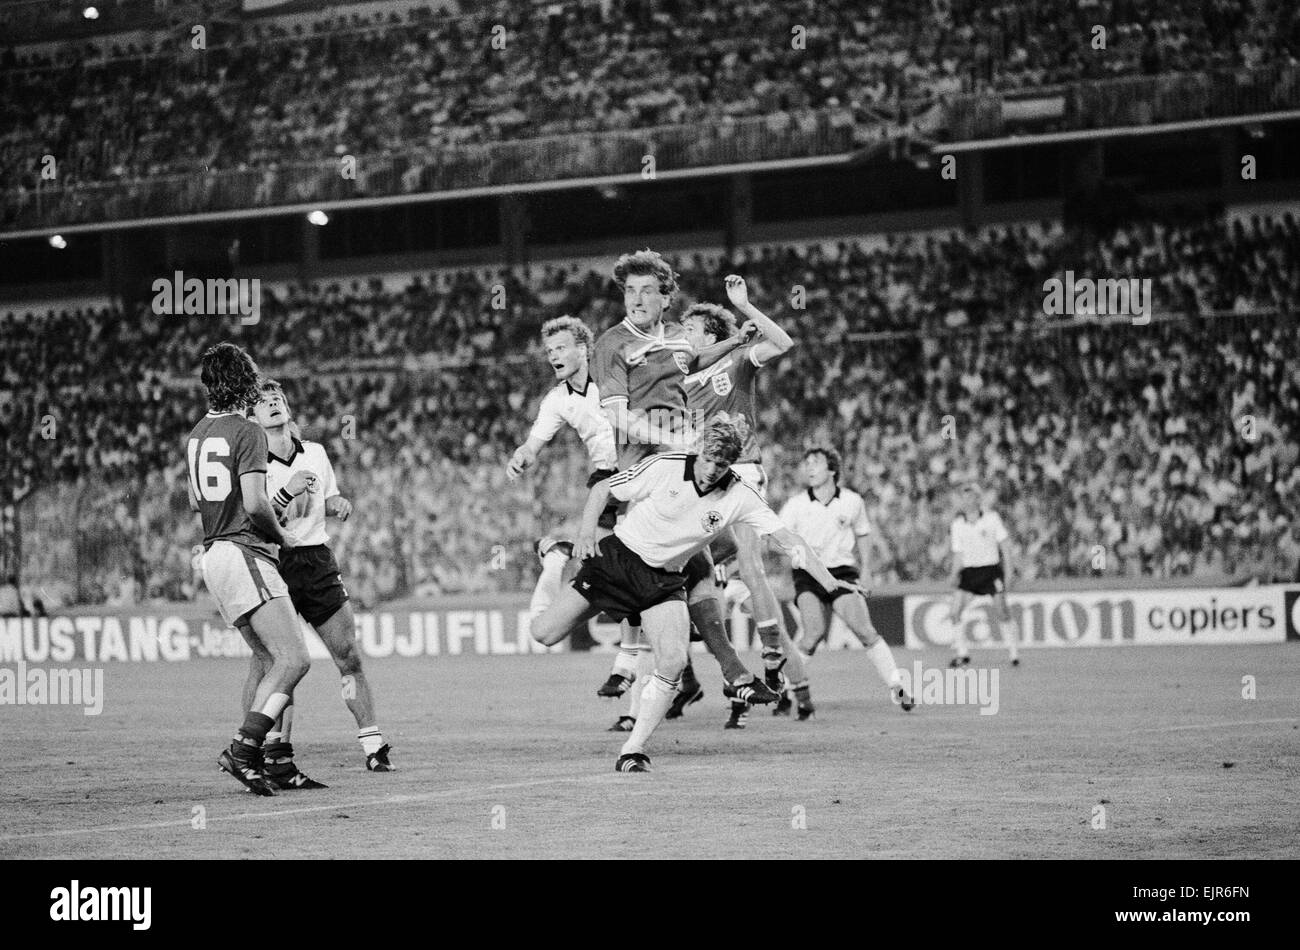 1982 Coppa del Mondo di calcio secondo turno gruppo B corrispondono a Madrid, Spagna. Germania Ovest 0 v Inghilterra 0. Inghilterra defender Terry Butcher salta in alto per una palla alta con West tedesco gli utenti malintenzionati durante la partita. Il 29 giugno 1982. Foto Stock